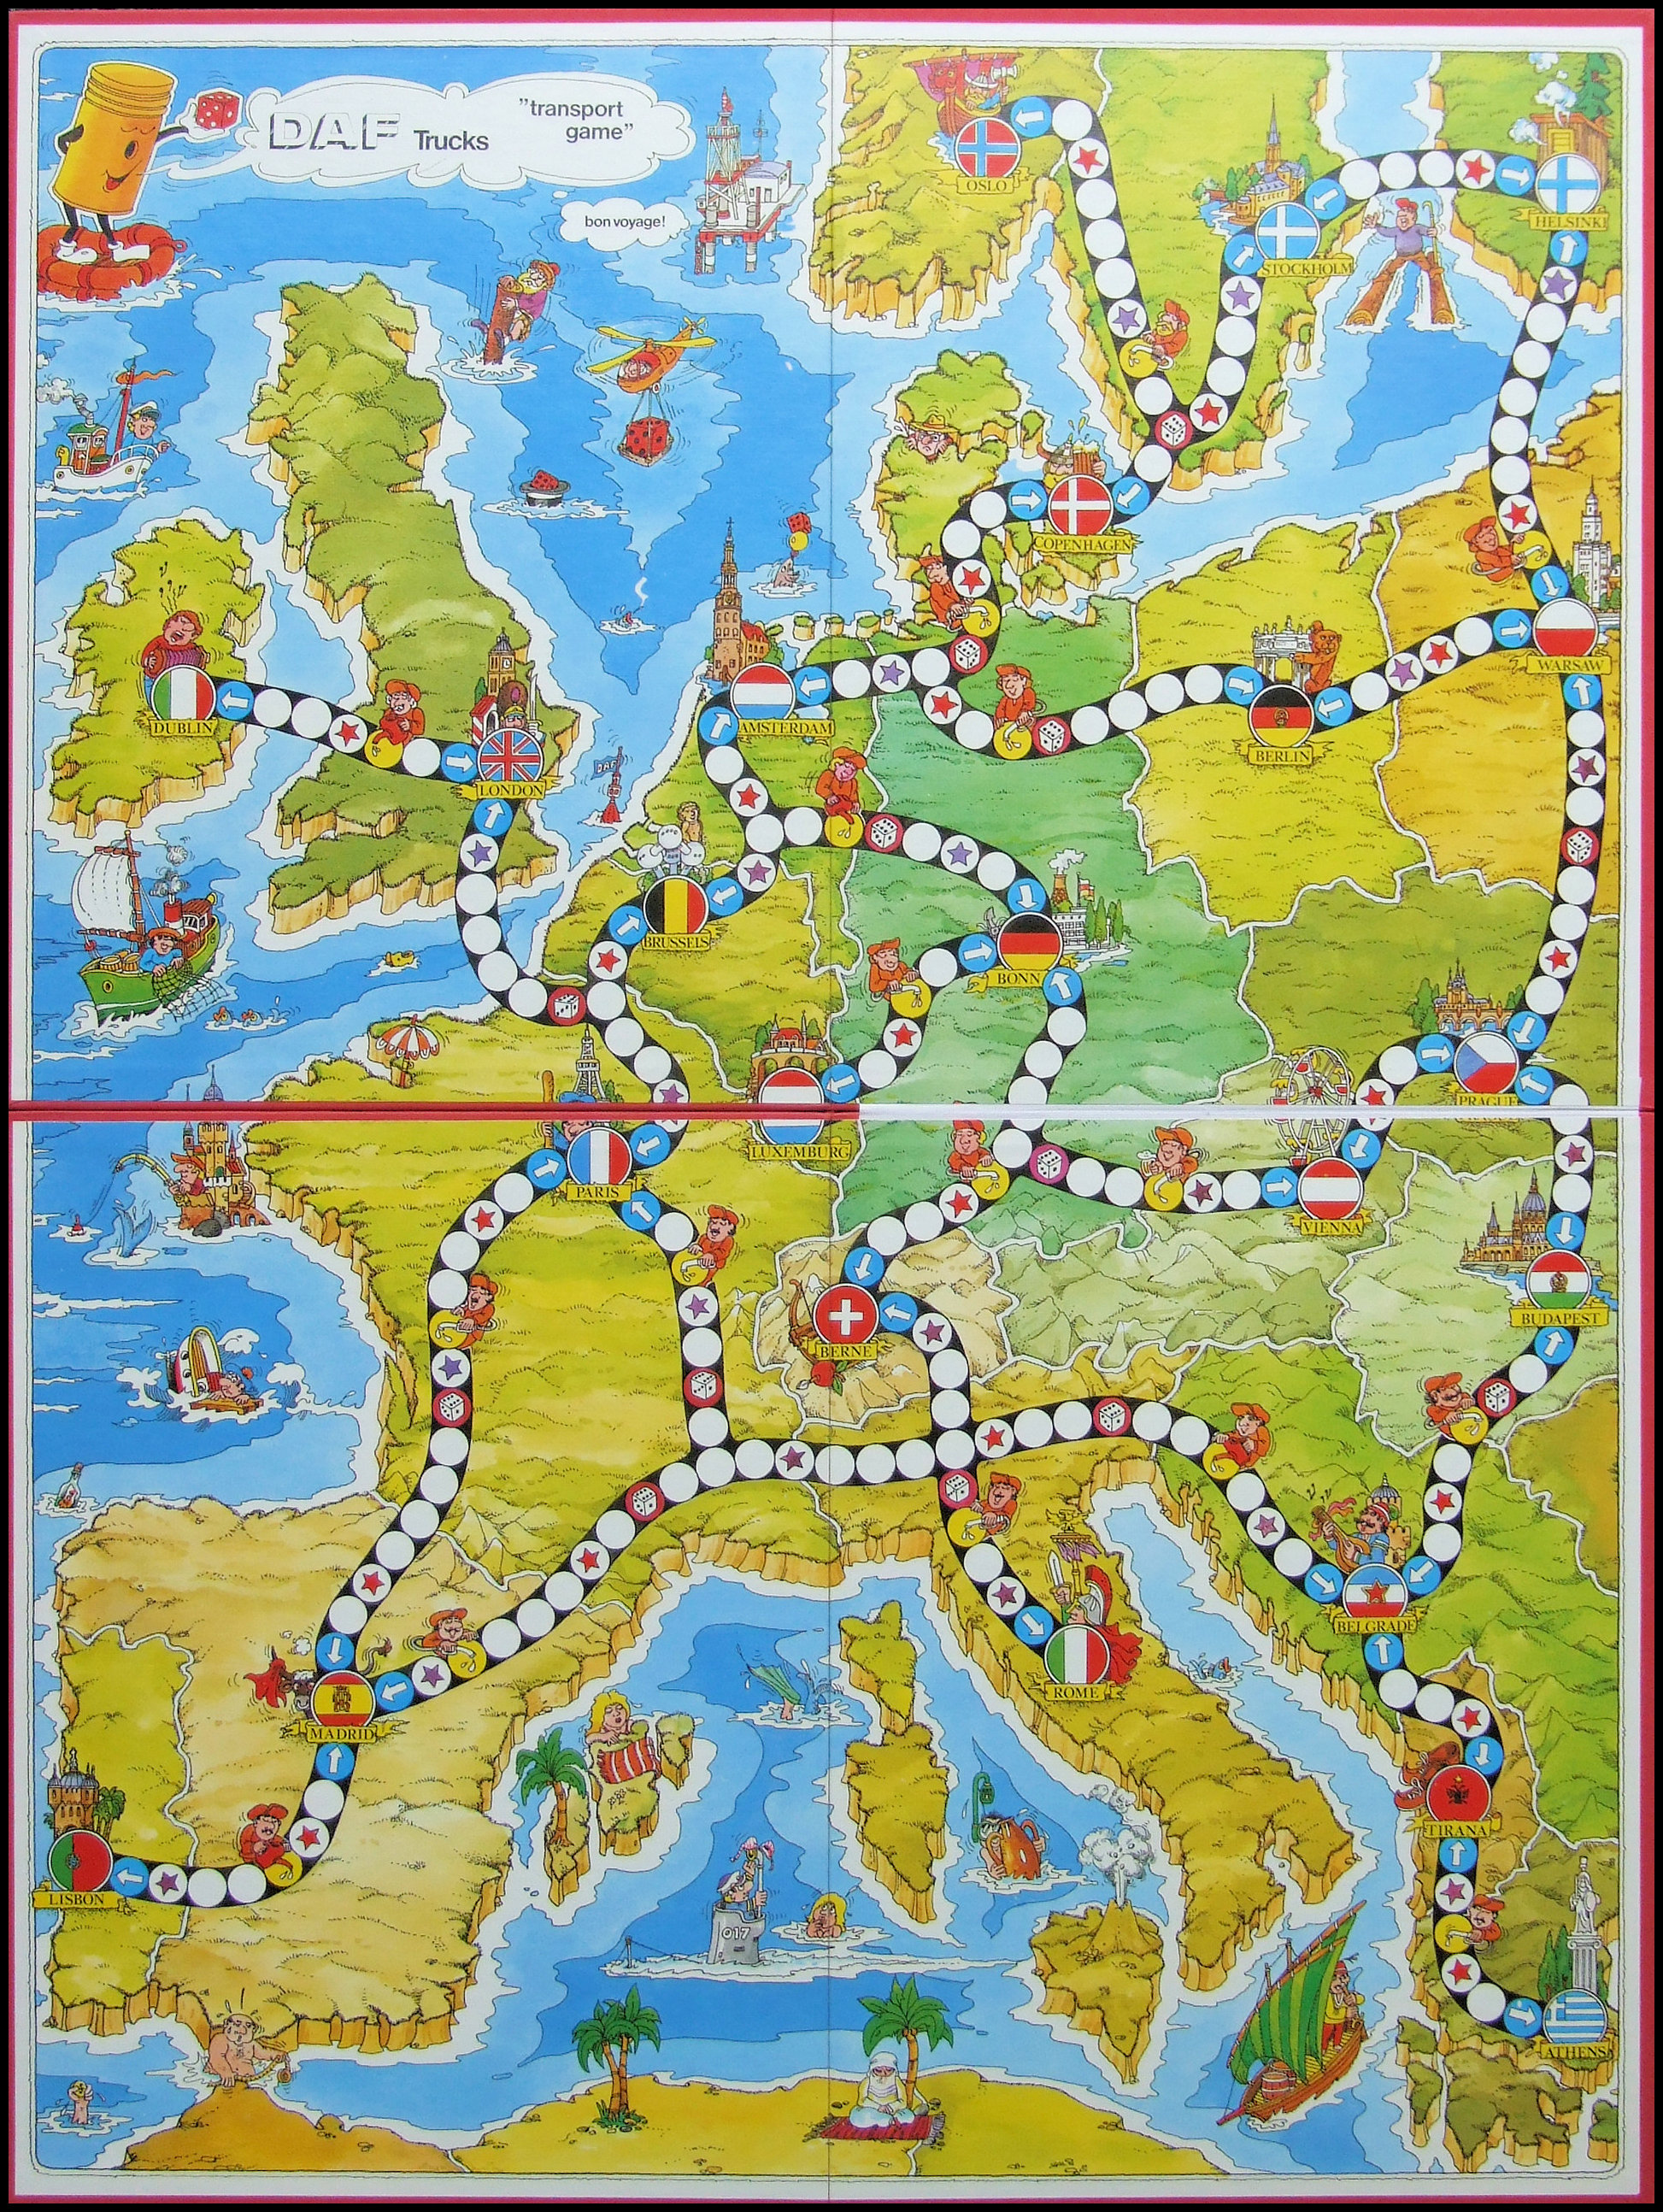 DAF Transport Game - Game Board